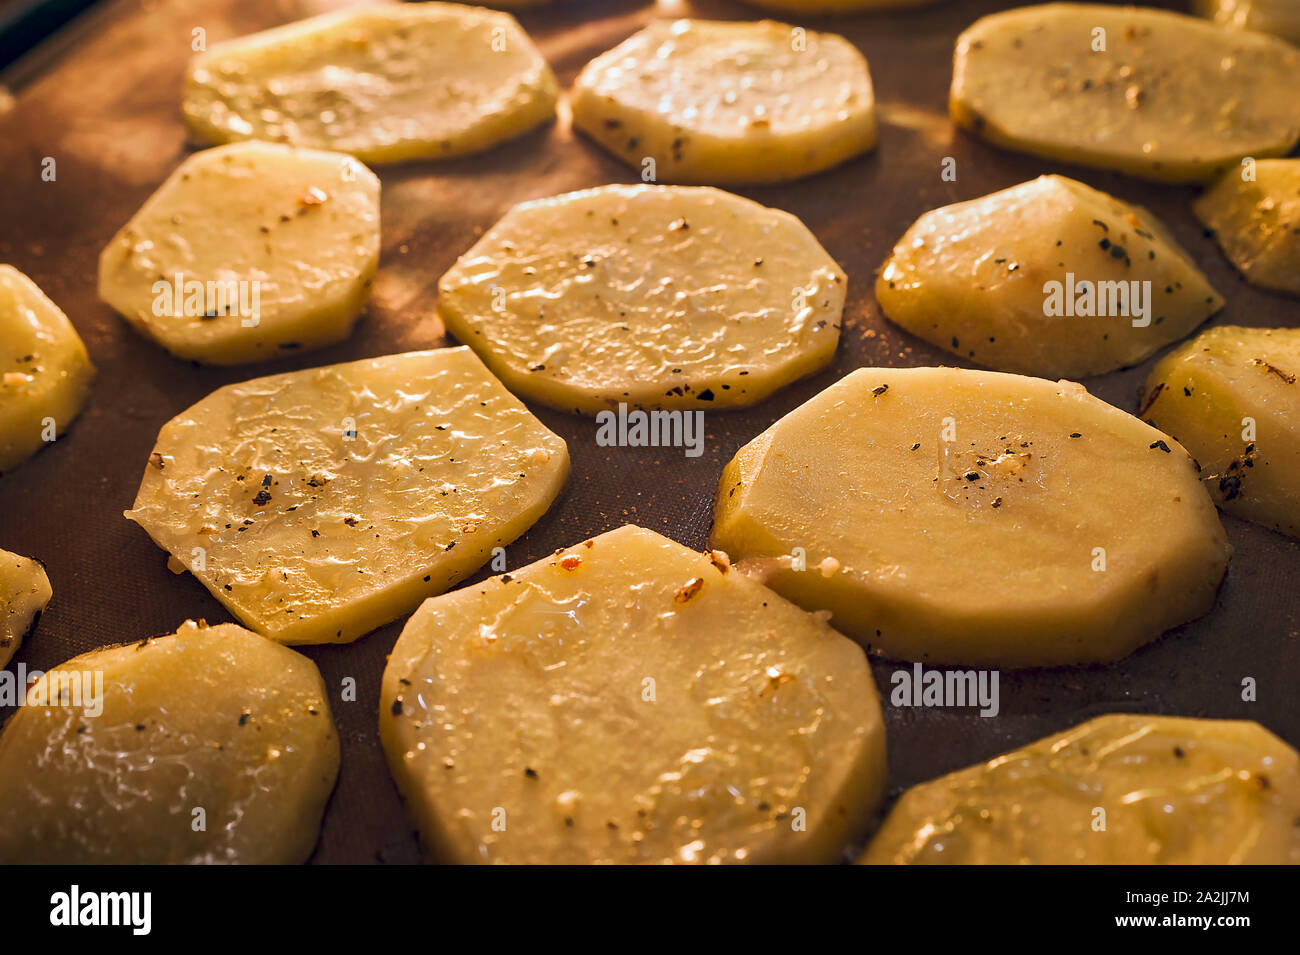 Patata asar a la parrilla. Golden rodajas condimentado con especias. Foto de stock